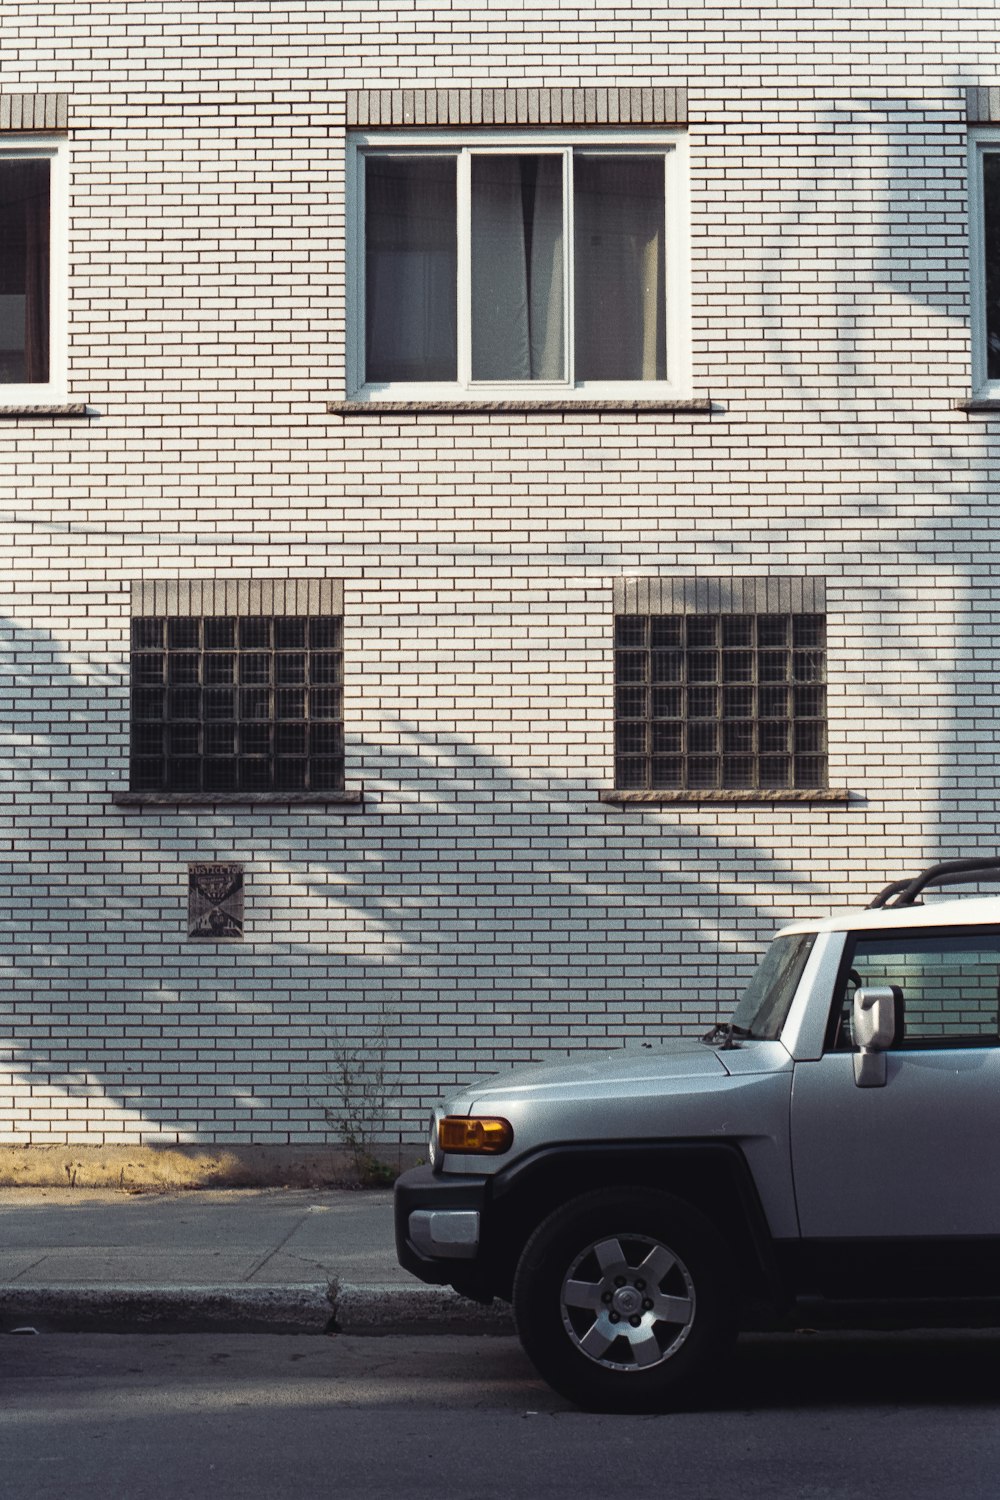 갈색 벽돌 건물 옆에 주차된 회색 차